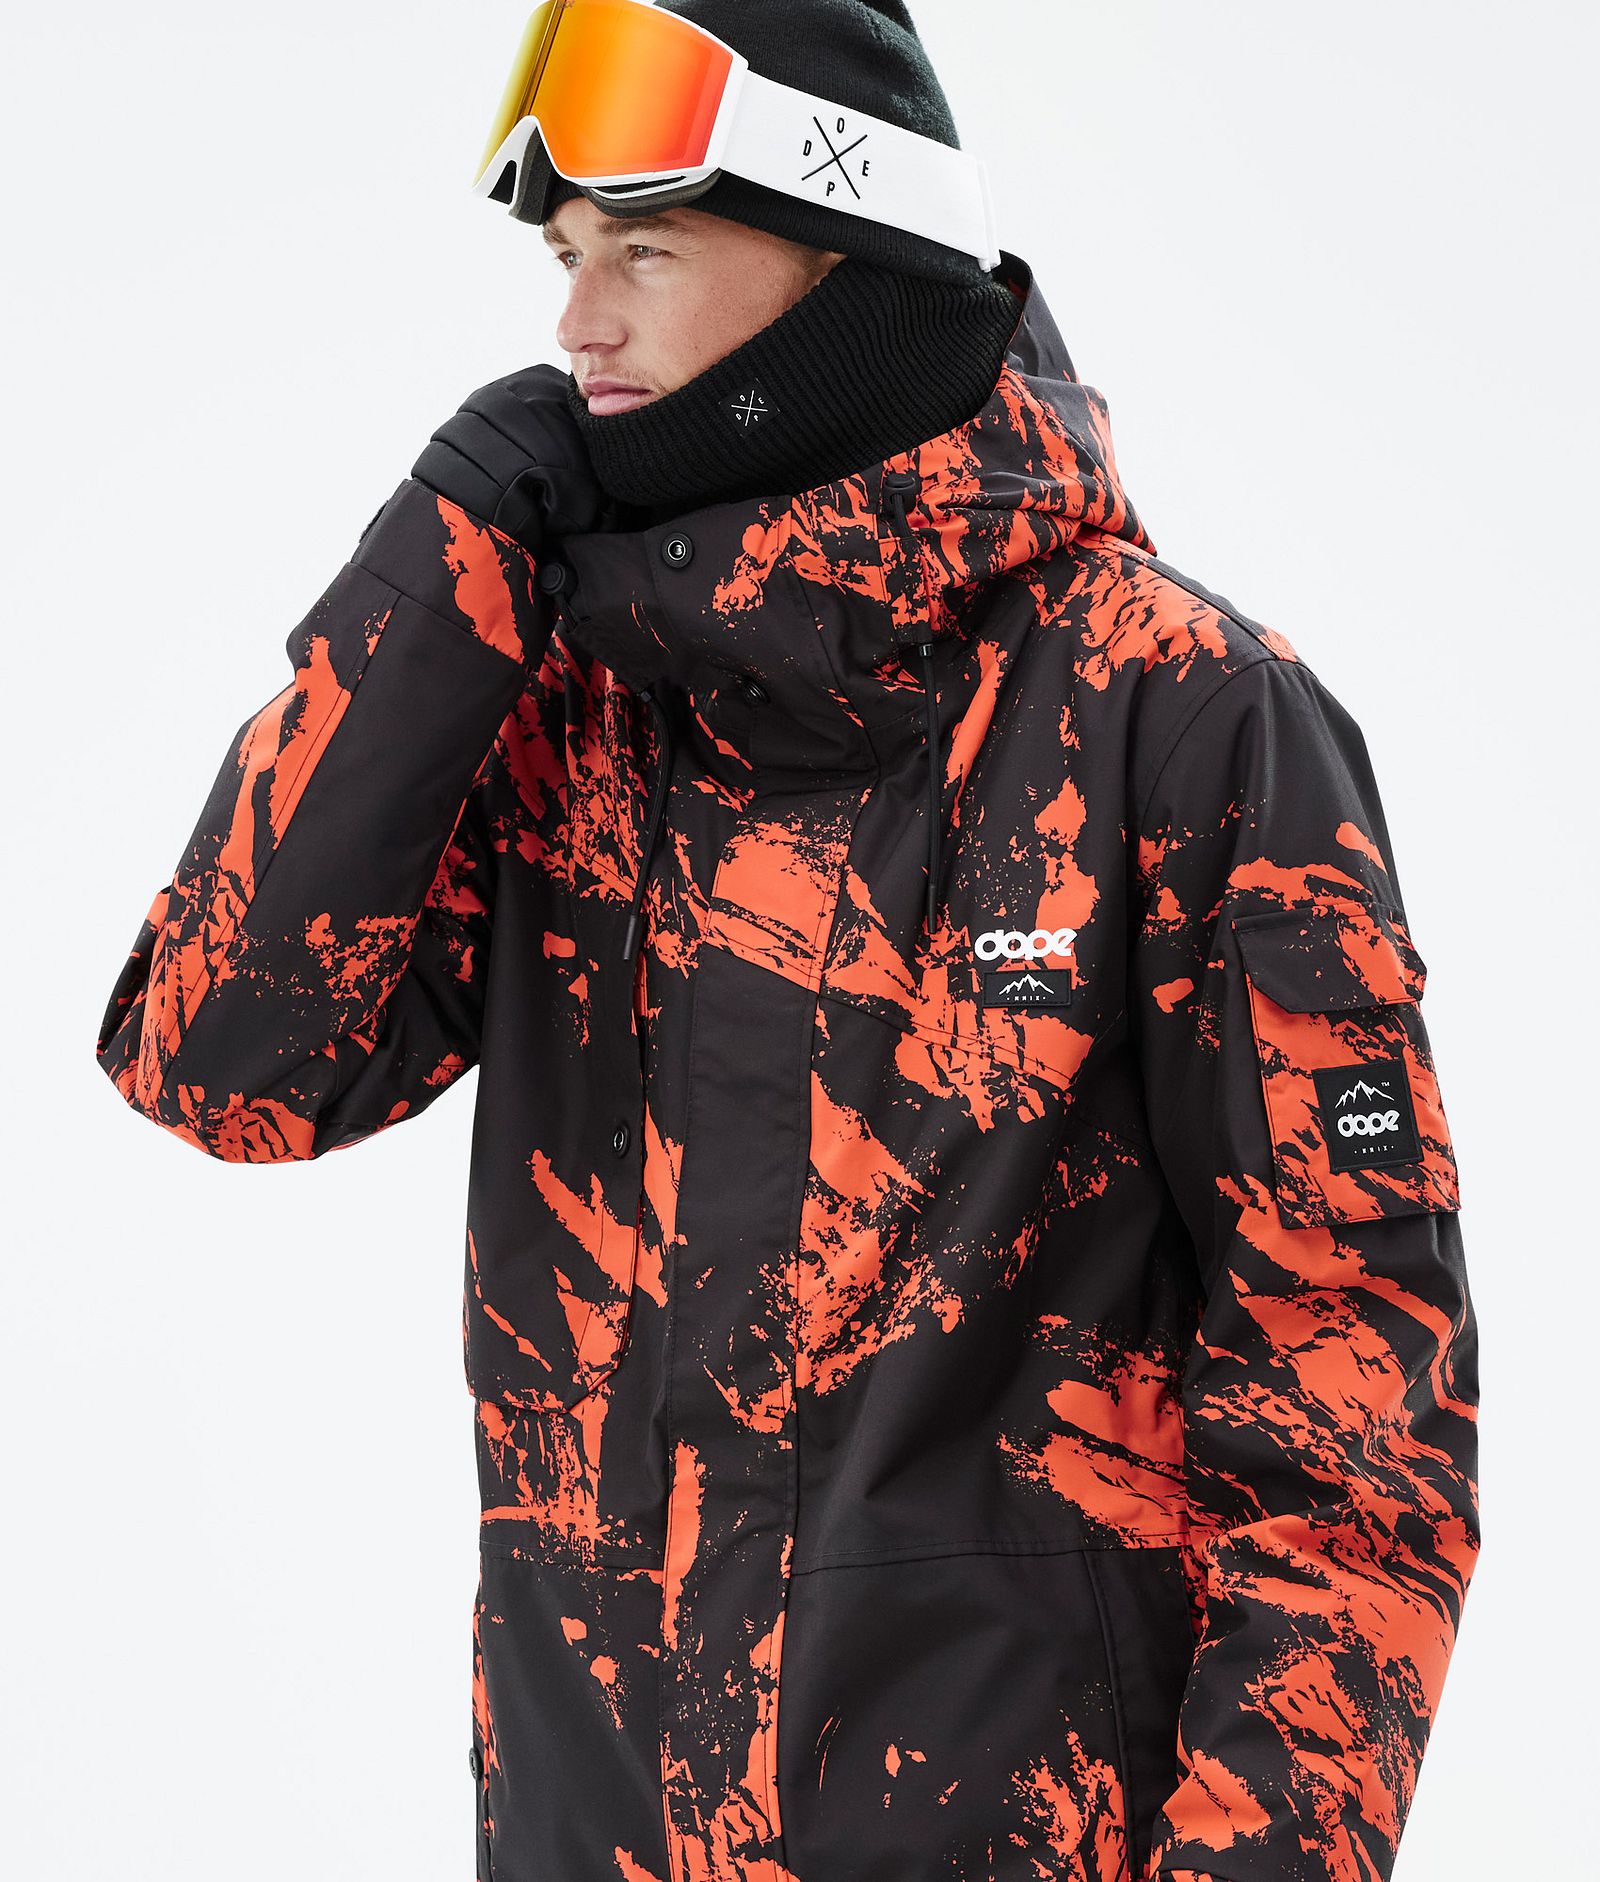 Adept スキージャケット メンズ Paint Orange